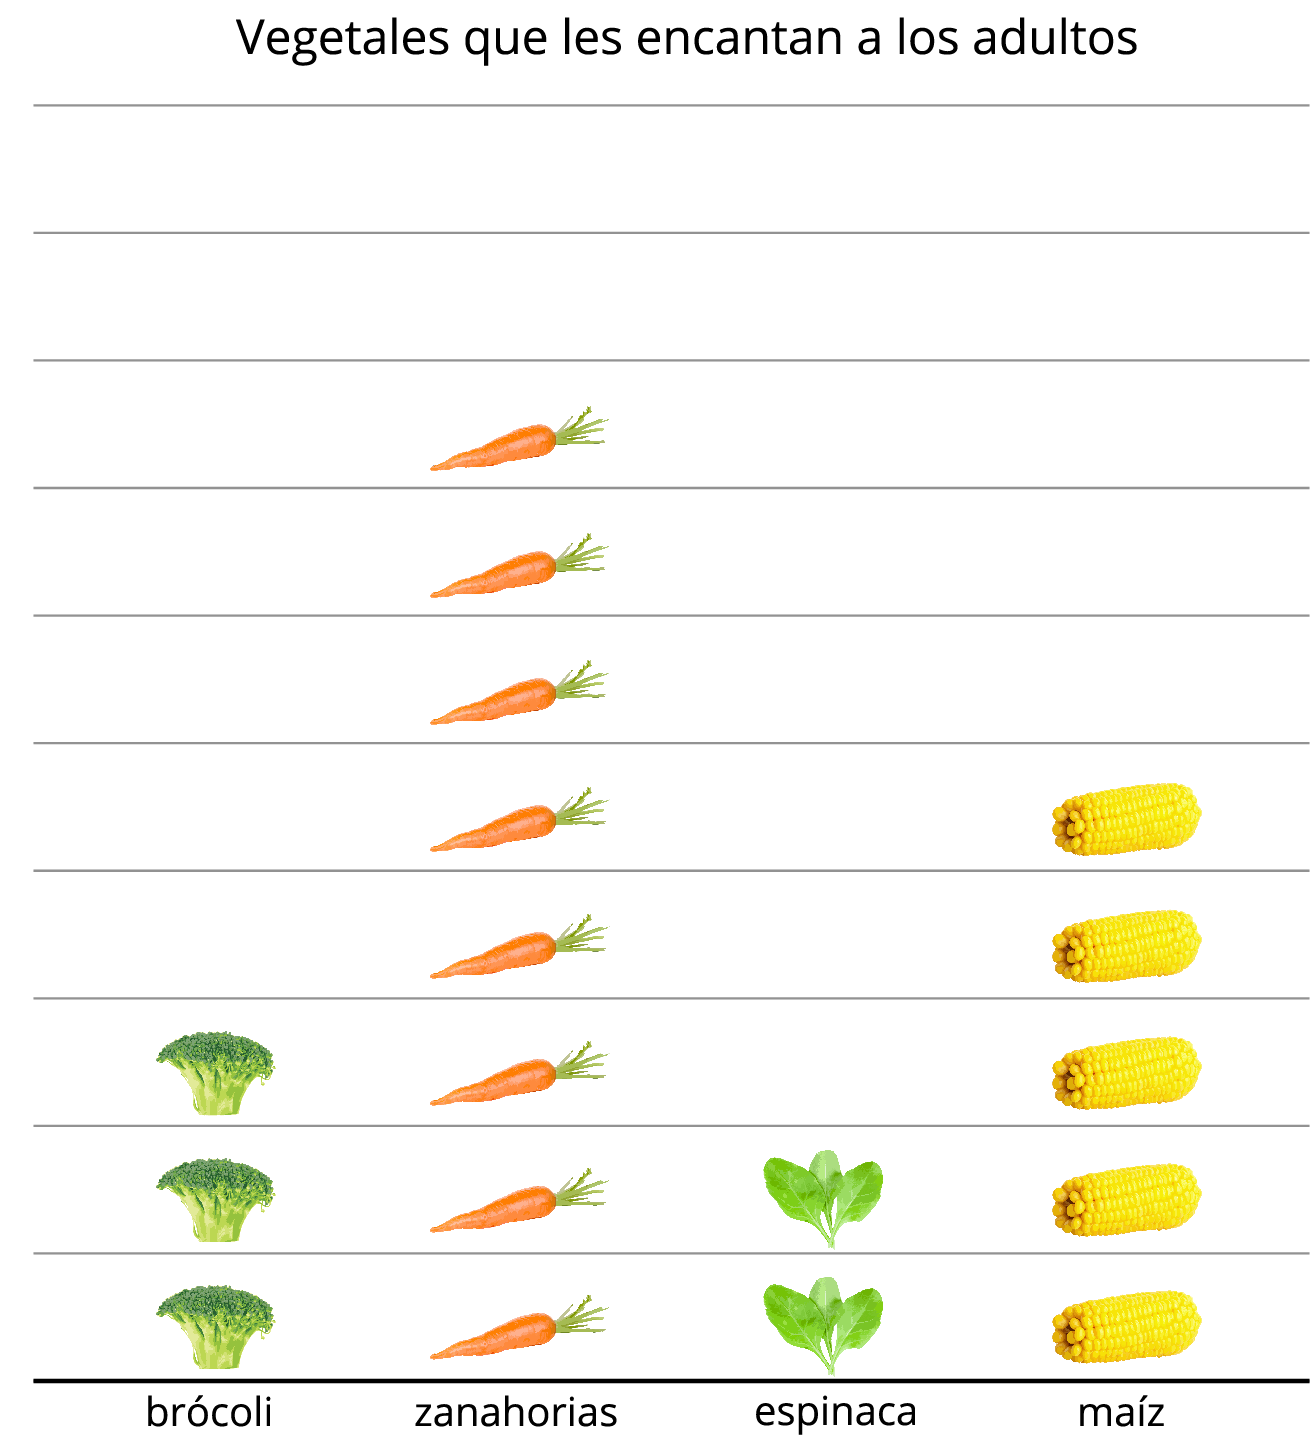 Gráfica de dibujos. “Vegetales que les encantan a los adultos”. 3 imágenes de brócoli. 8 imágenes de zanahoria. 2 imágenes de espinacas. 5 imágenes de maíz.